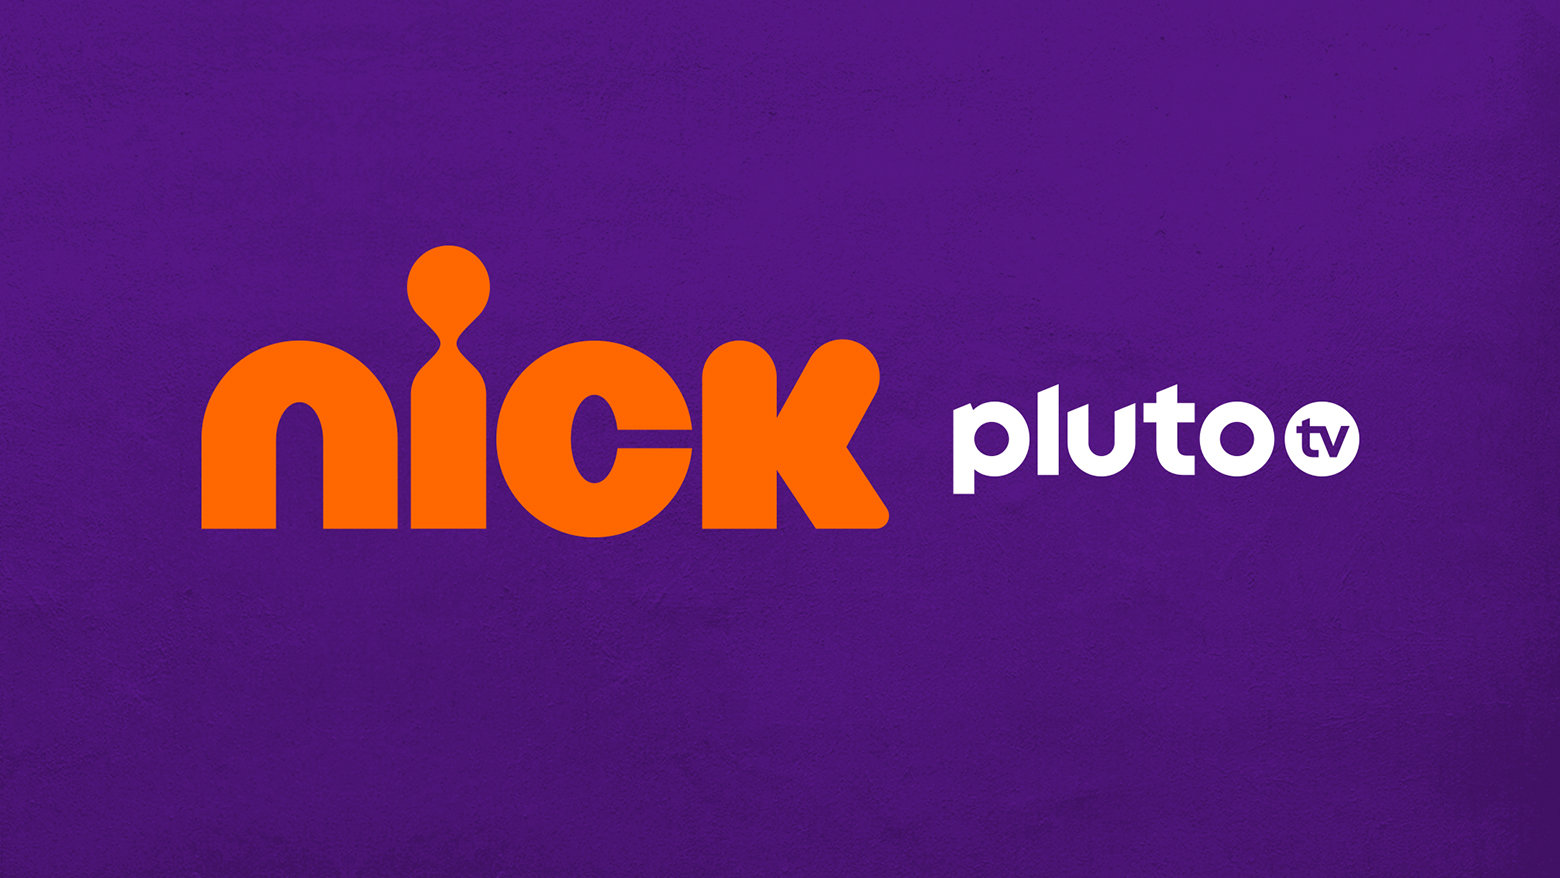 Nick-Pluto-TV.jpg